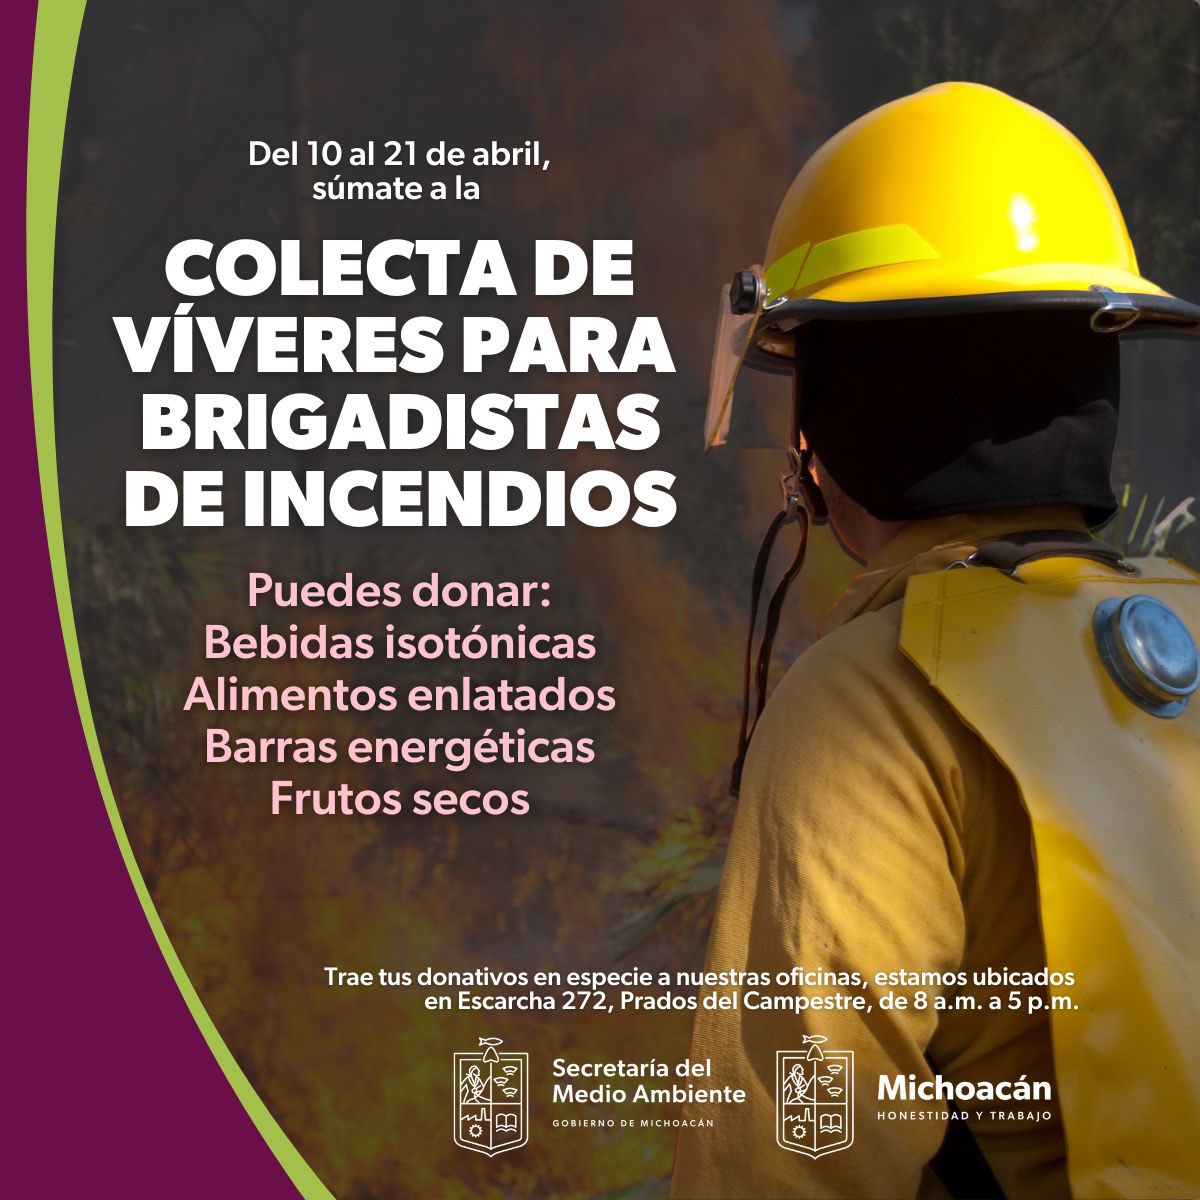 Súmate a la prevención y combate de los incendios forestales, te invitamos a colaborar con vivieres para los brigadistas en el estado de Michoacán.

Trae tus donaciones, del 10 al 21 de abril, al centro de acopio.

#AltoaLosIncendiosForestales
#MedioAmbienteMichoacán